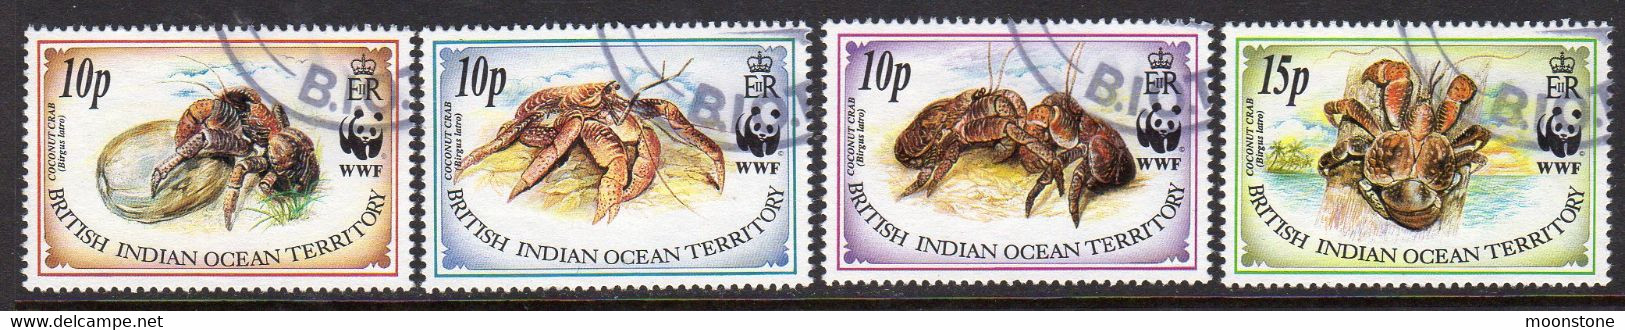 British Indian Ocean Territory BIOT 1993 Coconut Crab Set Of 4, Used, SG 132/5 (A) - British Indian Ocean Territory (BIOT)